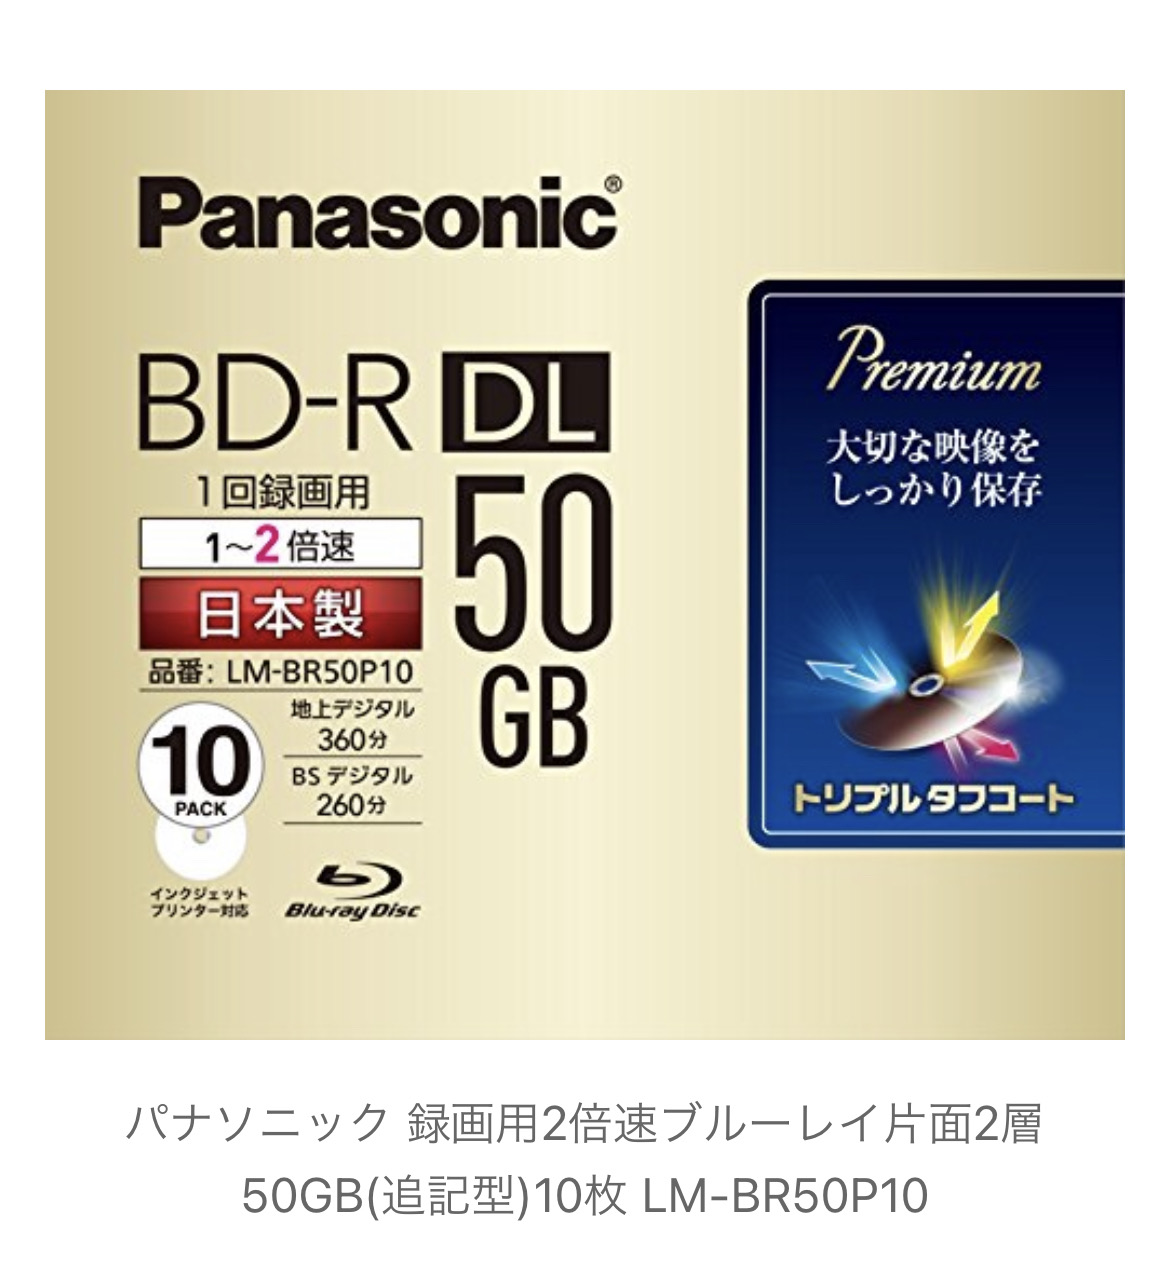 殿堂 Panasonicブルーレイディスク1回録画用 2倍速 10枚入り